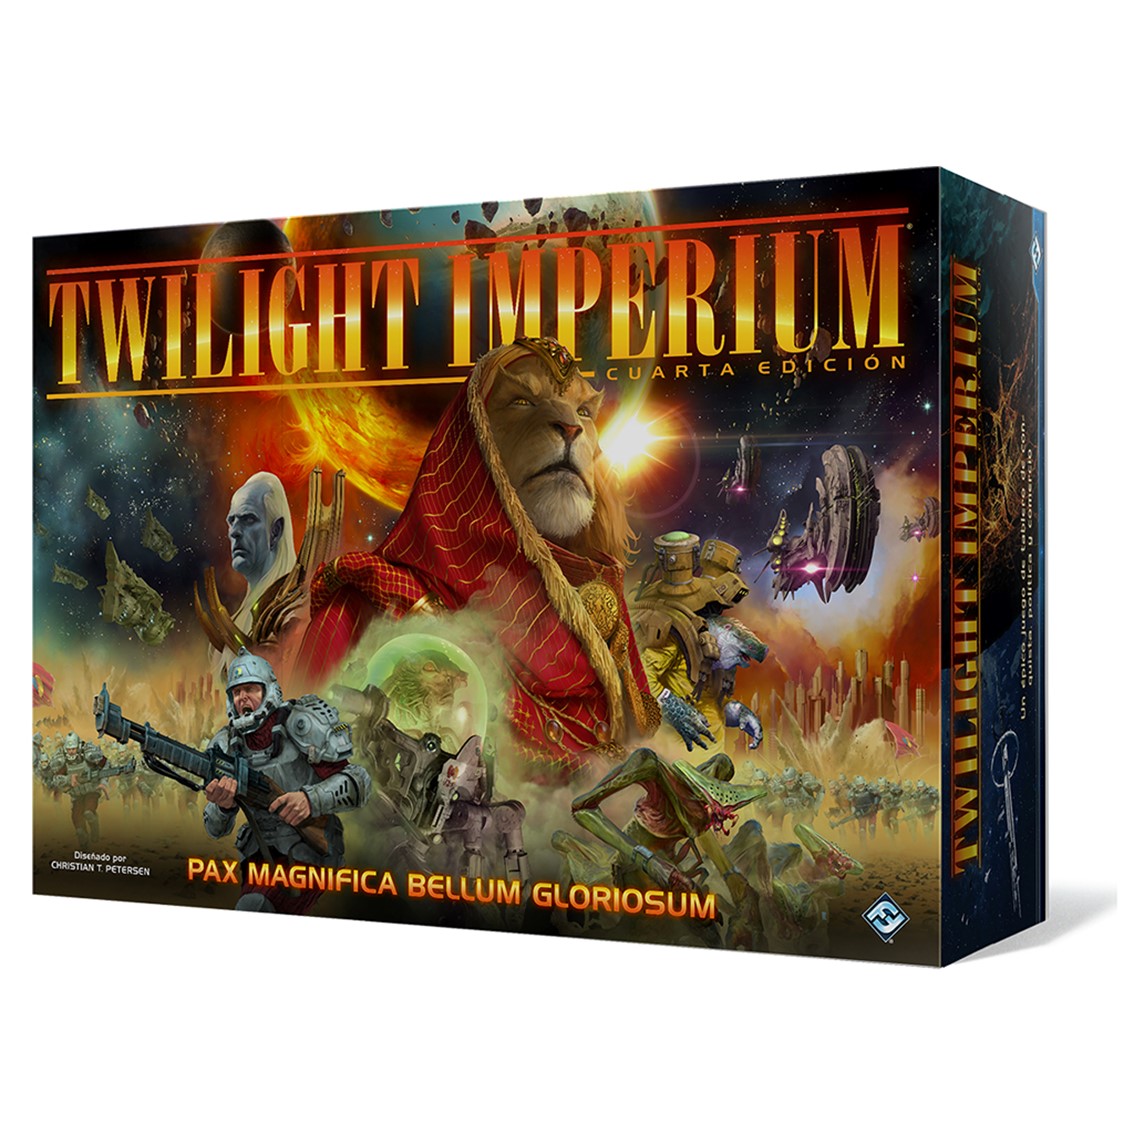 Jeu de société Twilight Imperium Quatrième Édition - Thème Science-Fiction - 3 à 6 joueurs - 14 ans et plus - Durée 240-480min. environ.